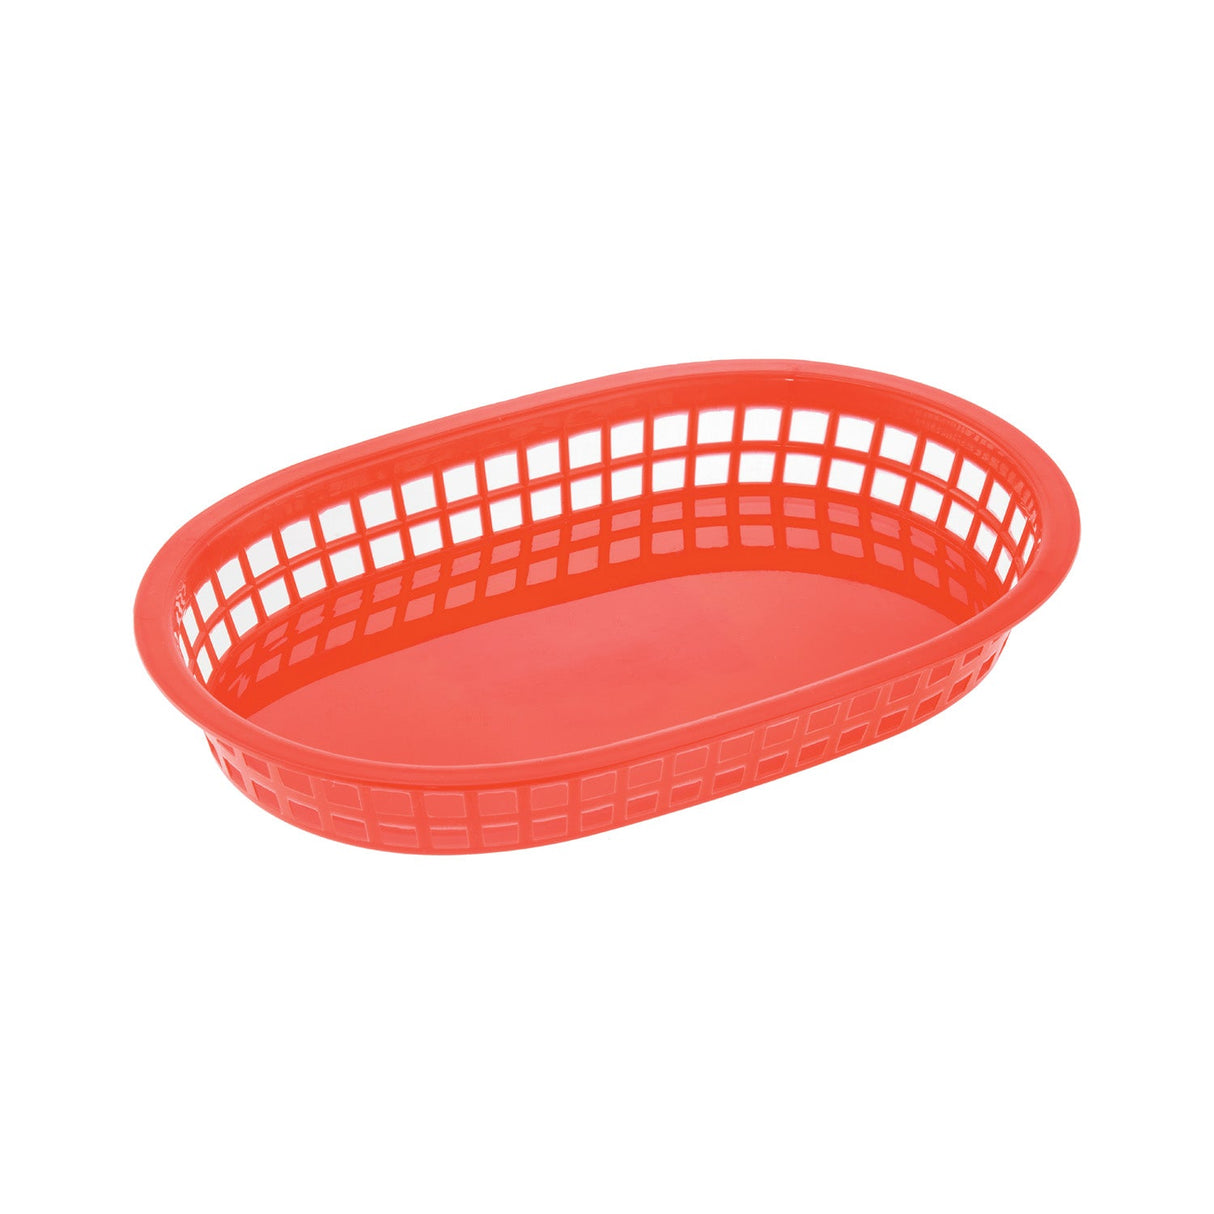 Fast Food Basket PP Oblong Red 10-7/8"L